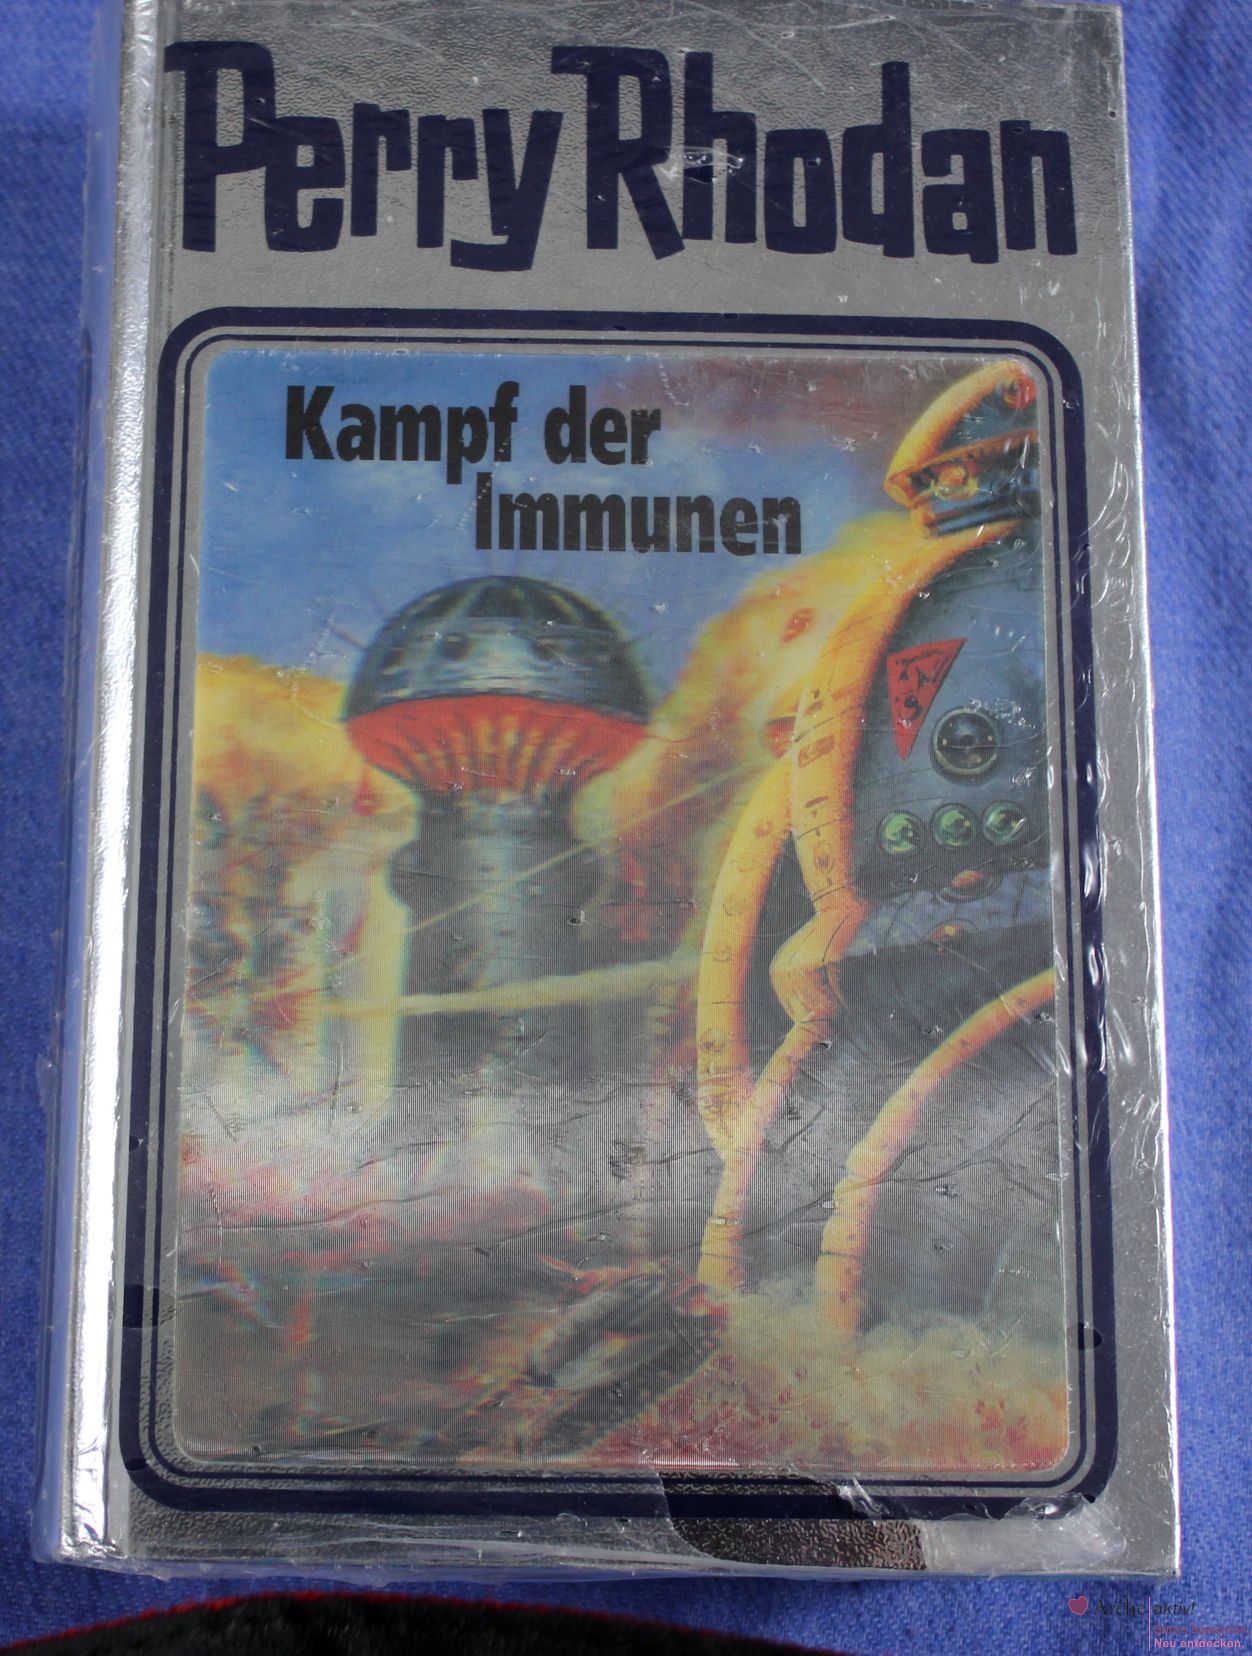 Perry Rhodan Roman "Kampf der Immunen", Silberband Nr. 56 mit Hologramm - neu, OVP